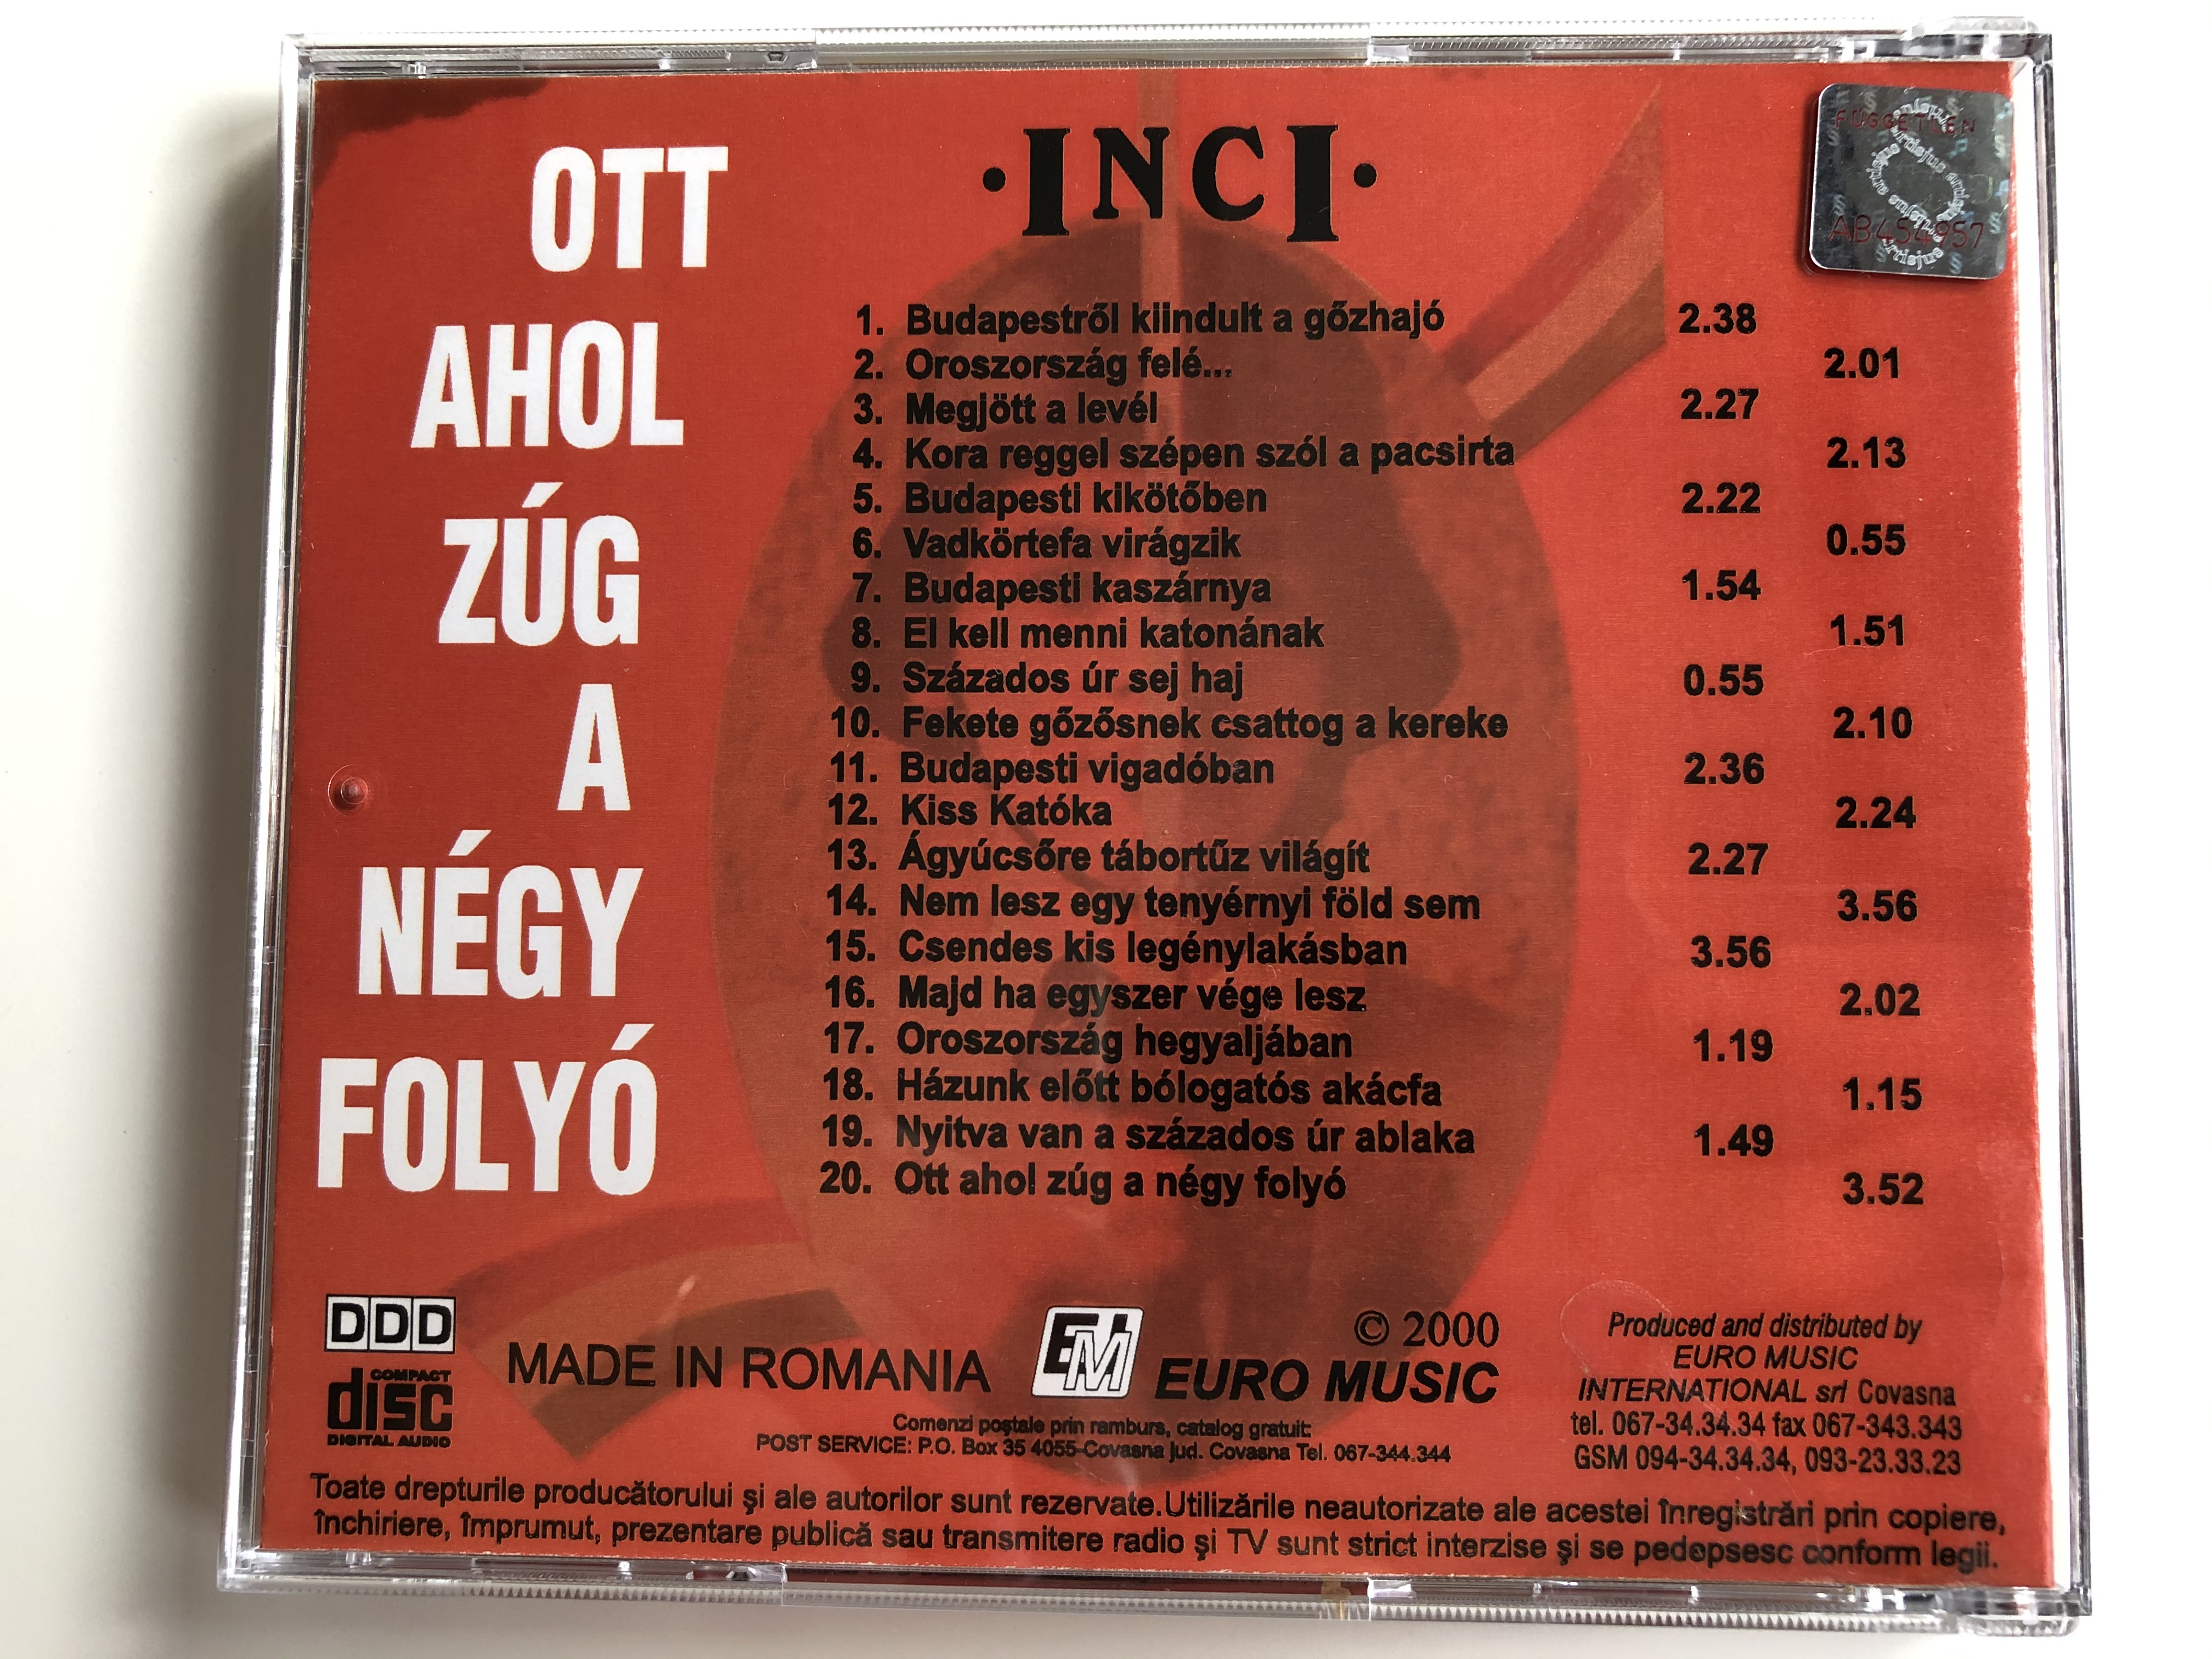 inci-ott-ahol-z-g-a-n-gy-foly-euro-music-audio-cd-2000-75674-4-.jpg